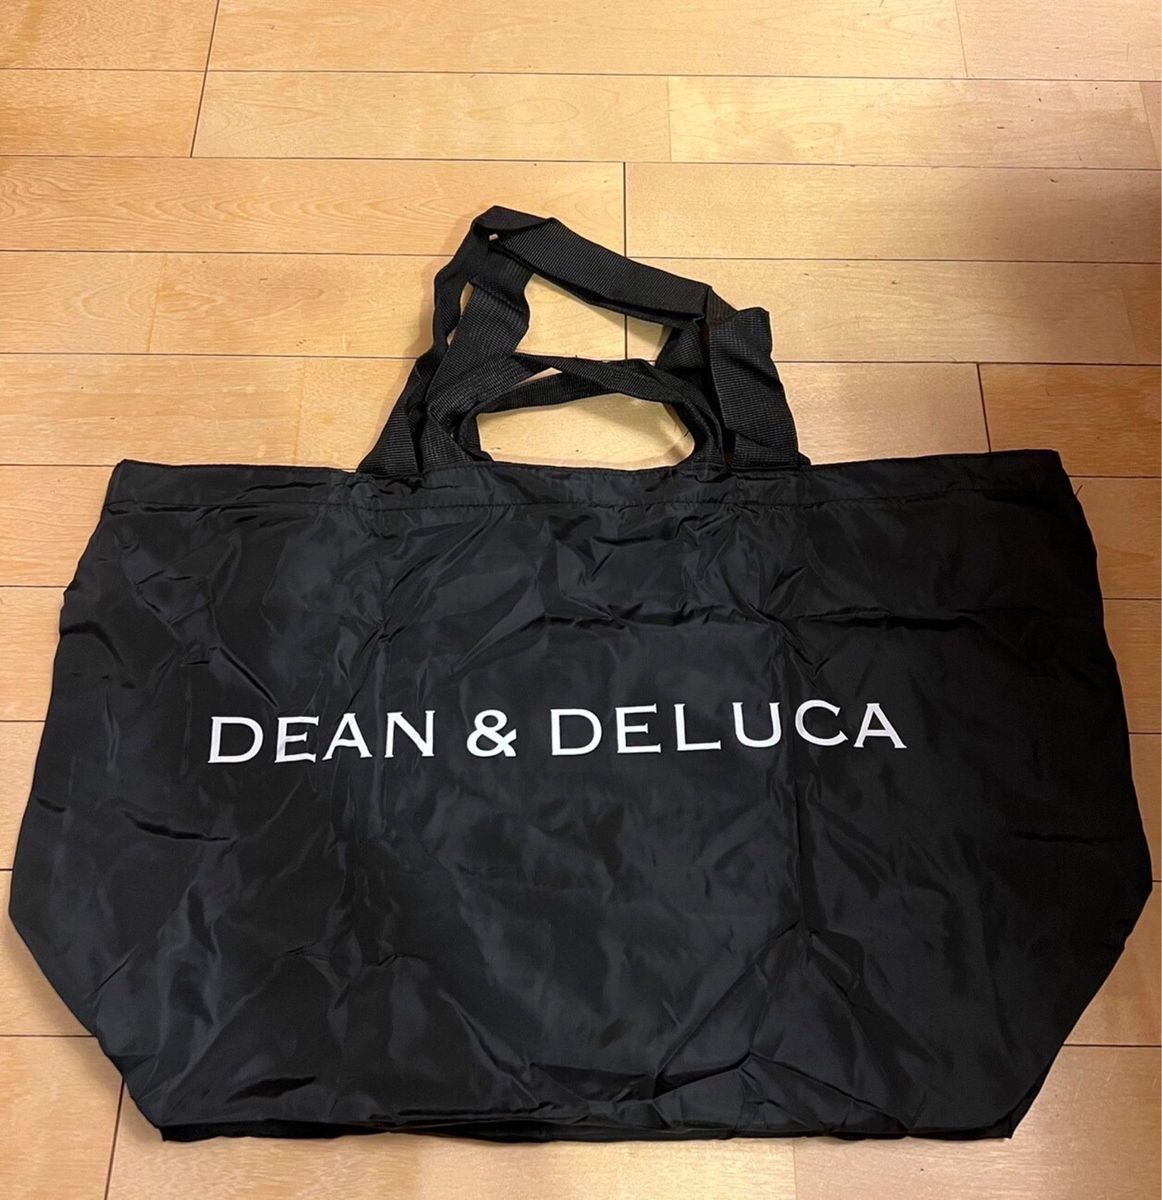 【本日限定SALE】DEAN & DELUCA パッカブルトートバッグ エコバッグ 黒 ショッピング